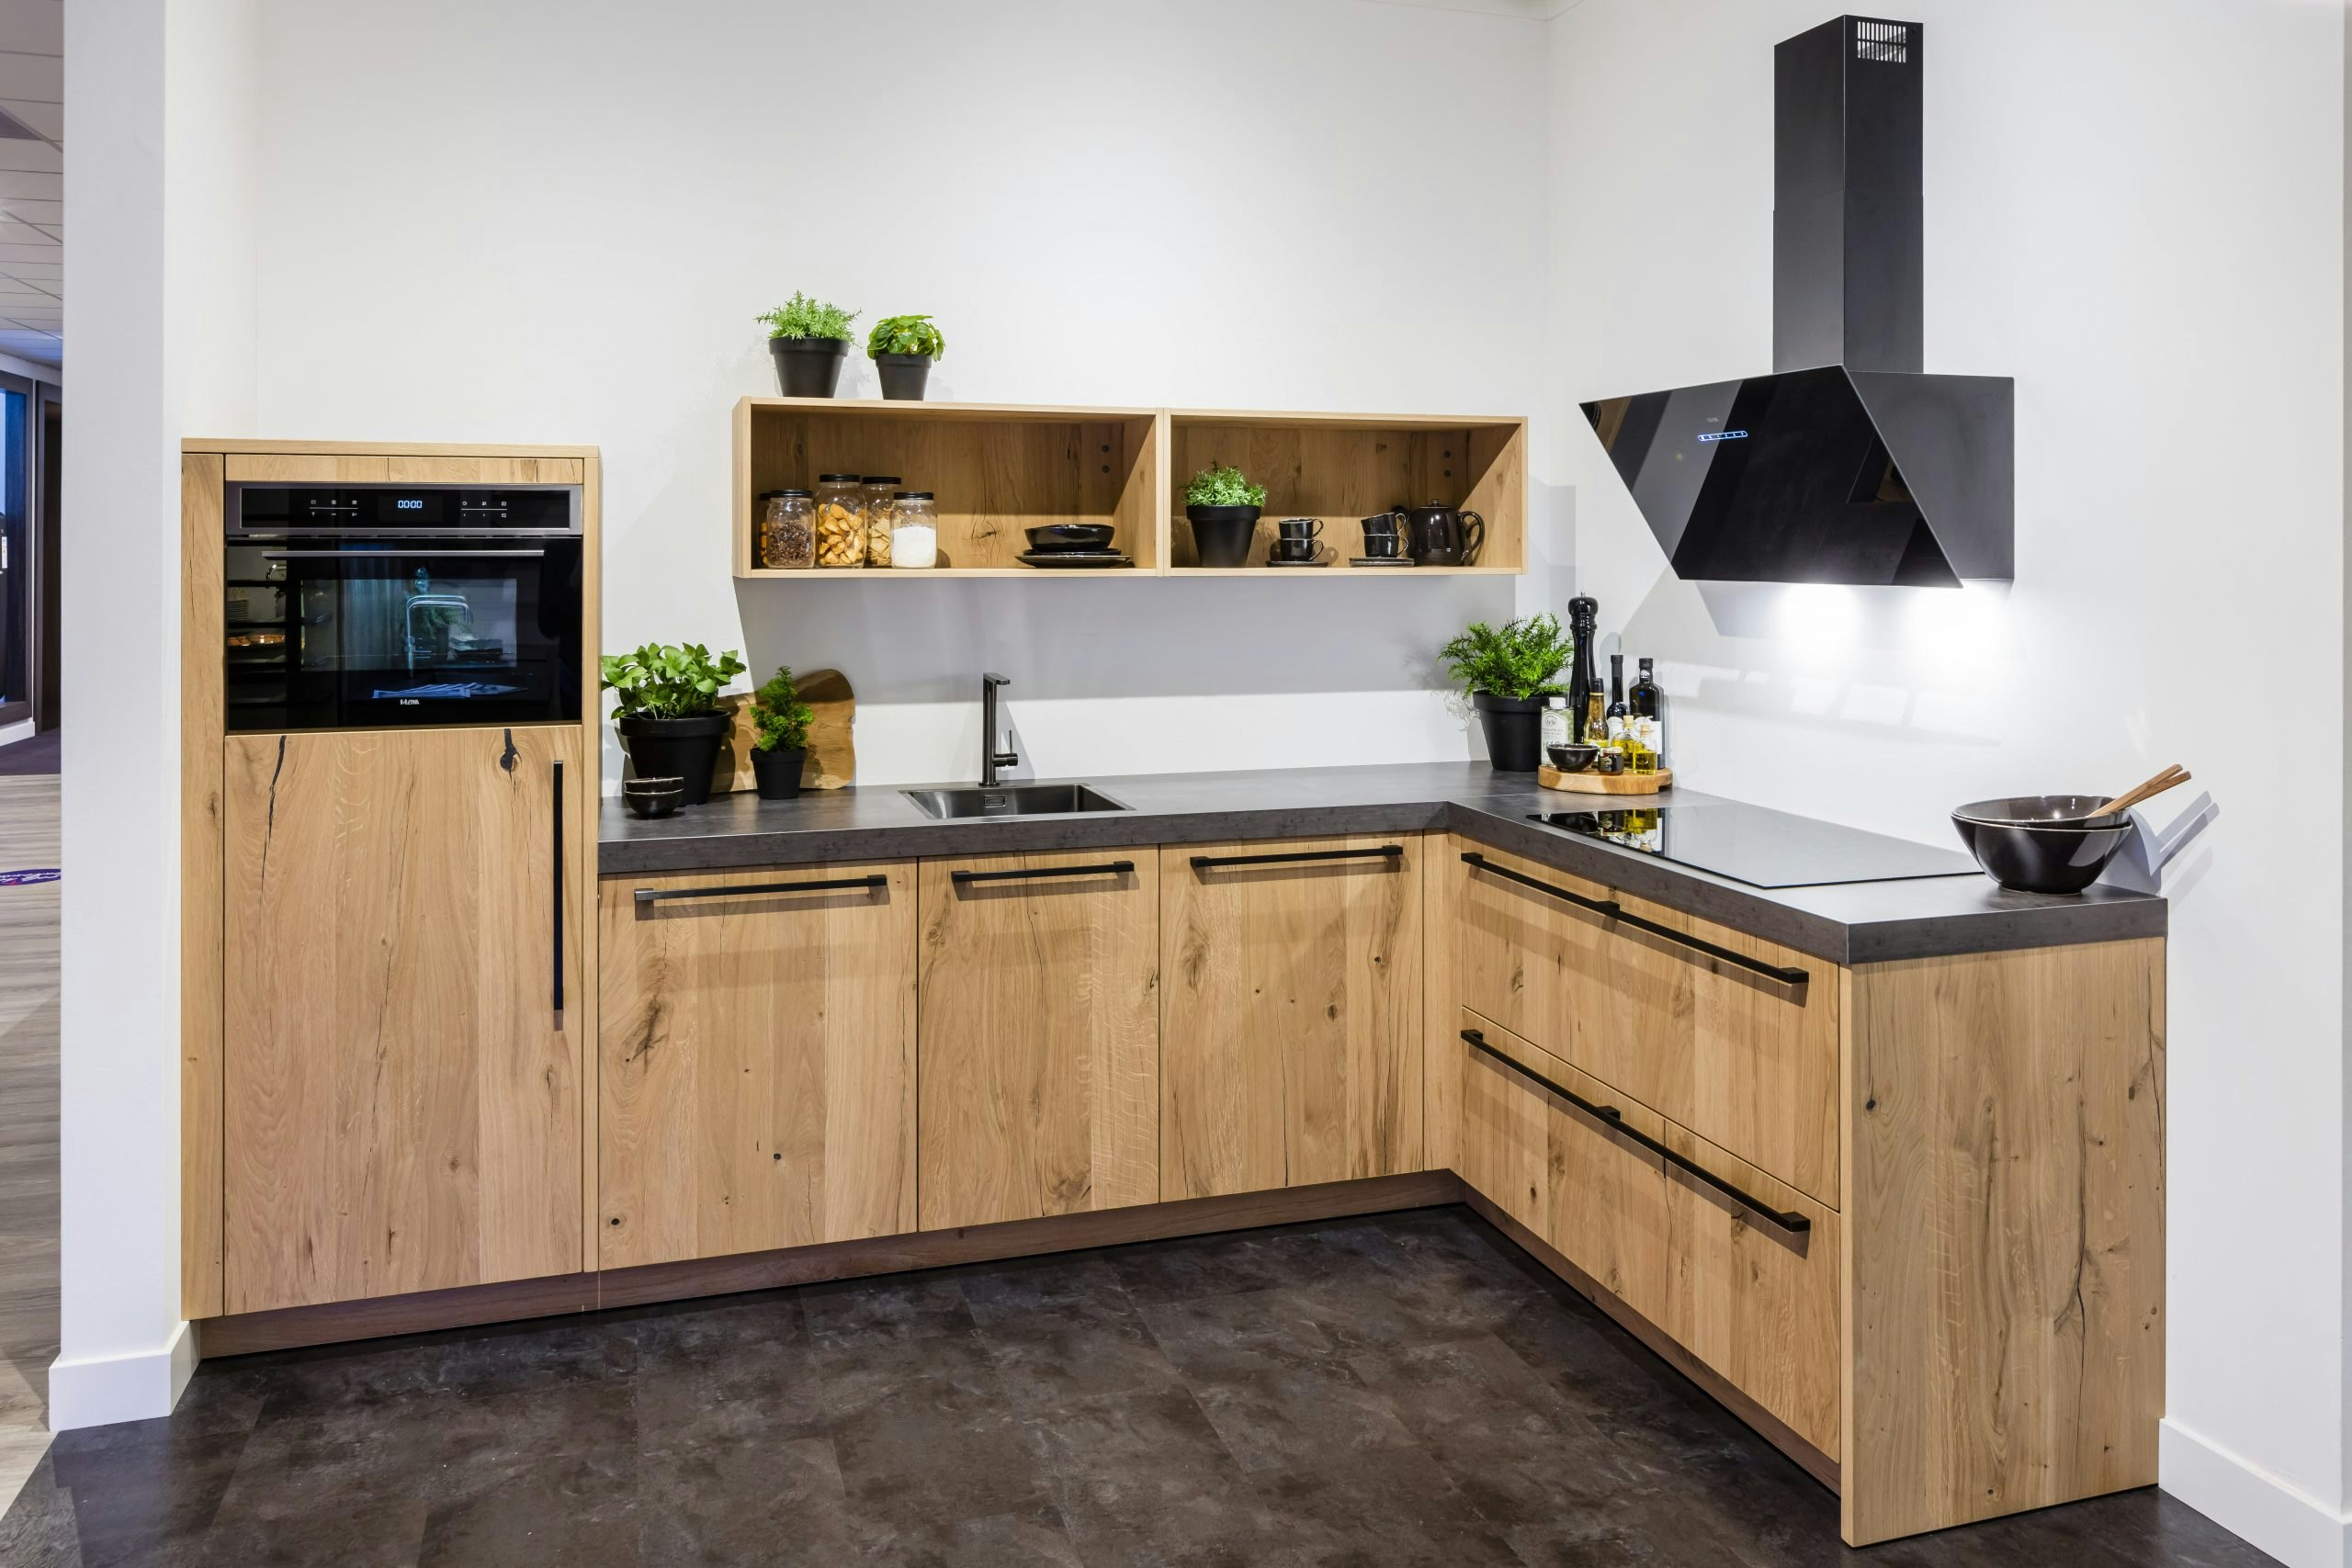 Houten keuken met open bovenkastjes en composiet keukenblad